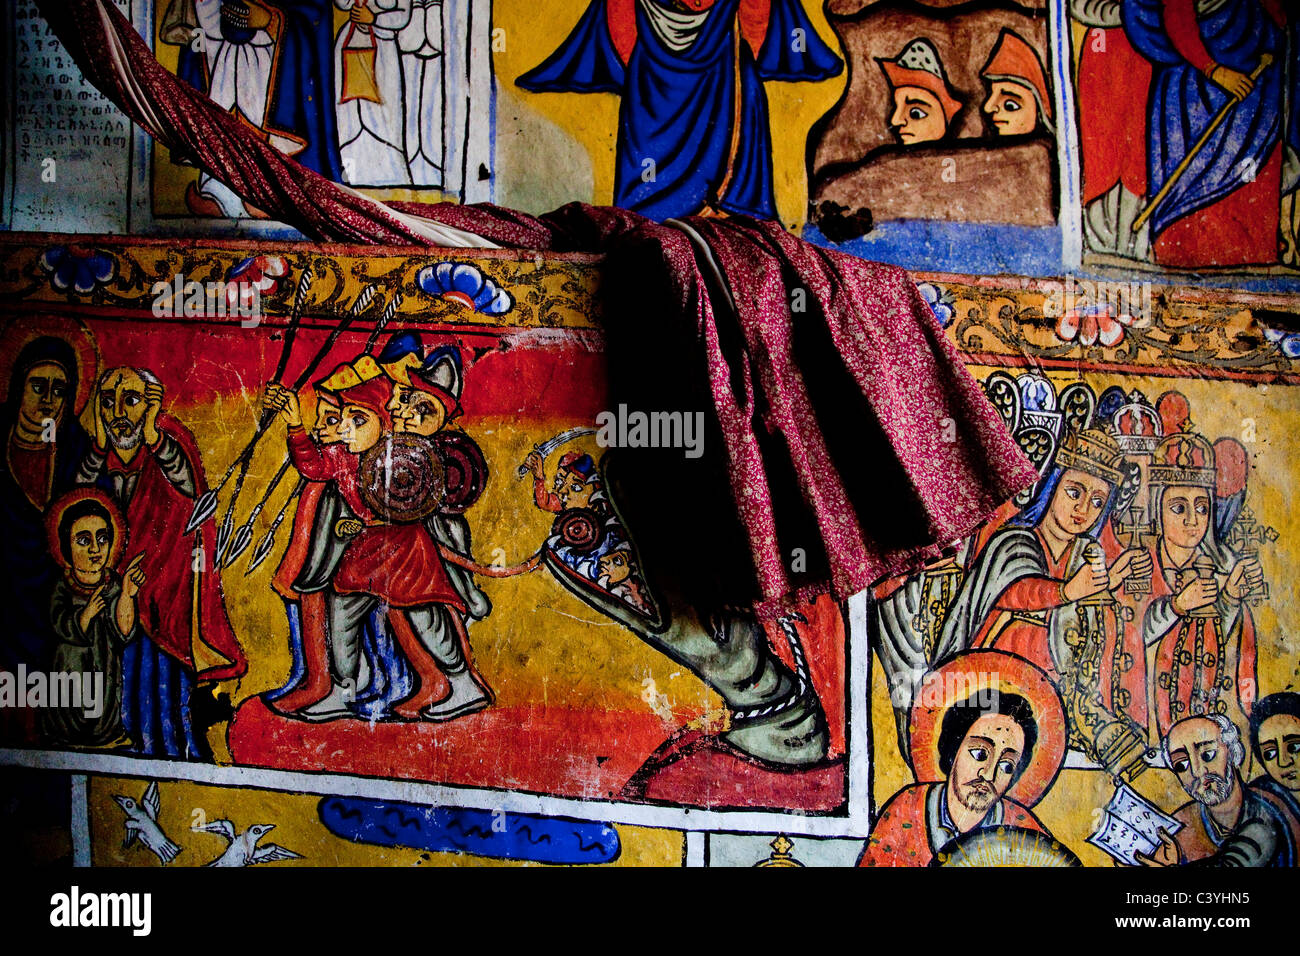 Ura kidane meret chiesa, Lago Tana, Etiopia, Africa Foto Stock